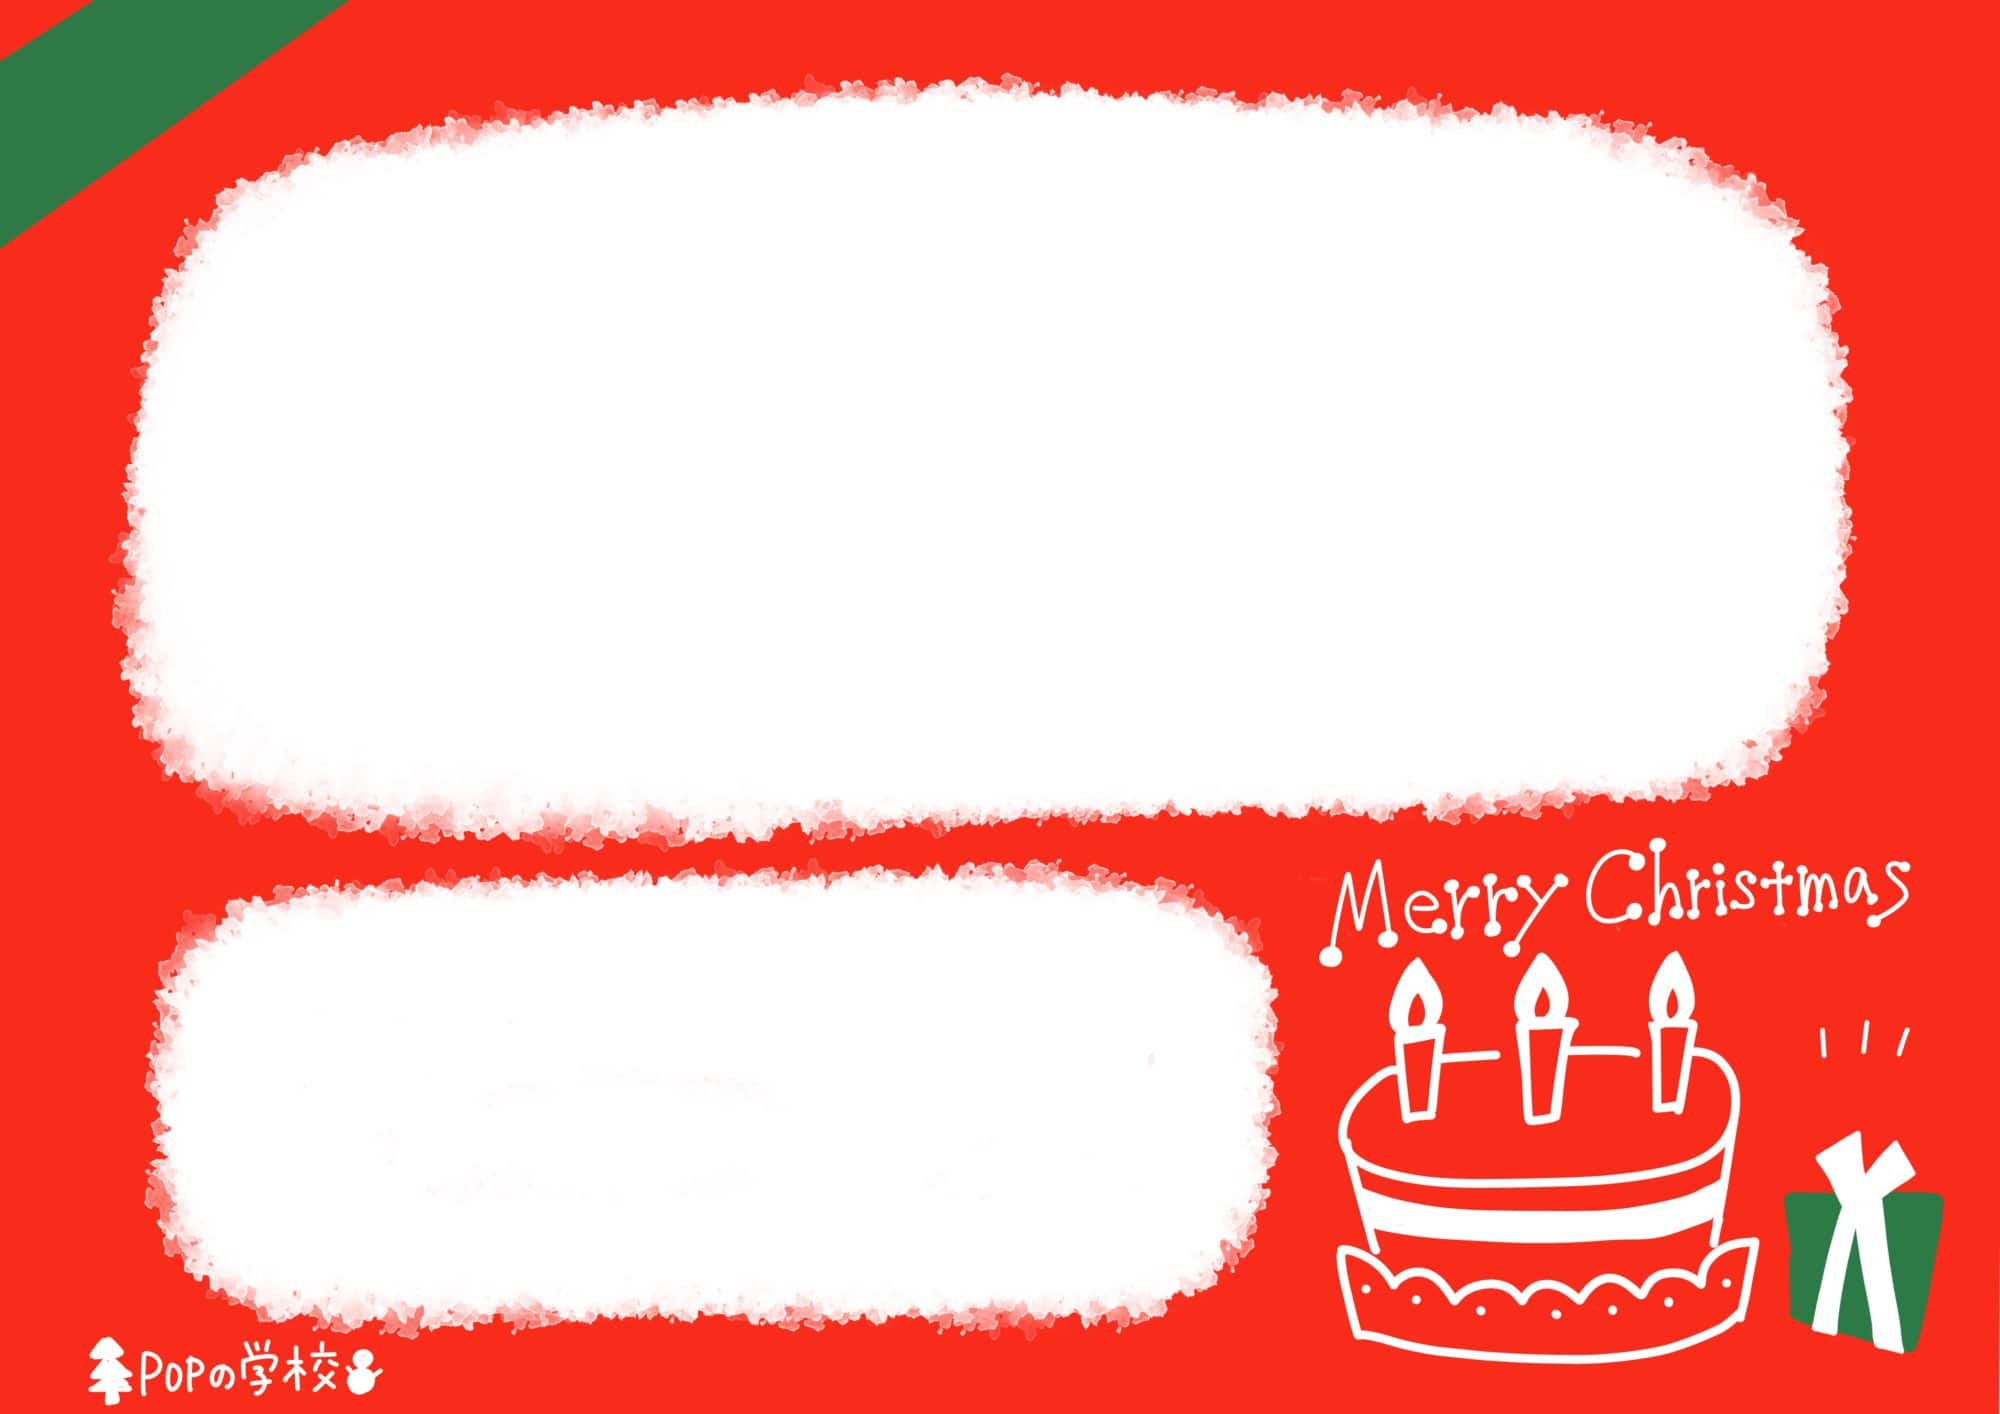 クリスマスケーキの良いコトを1番上に書くテンプレートを作りました コトpopで売上げアップ ポップデザイン 書き方を学ぶpopの学校